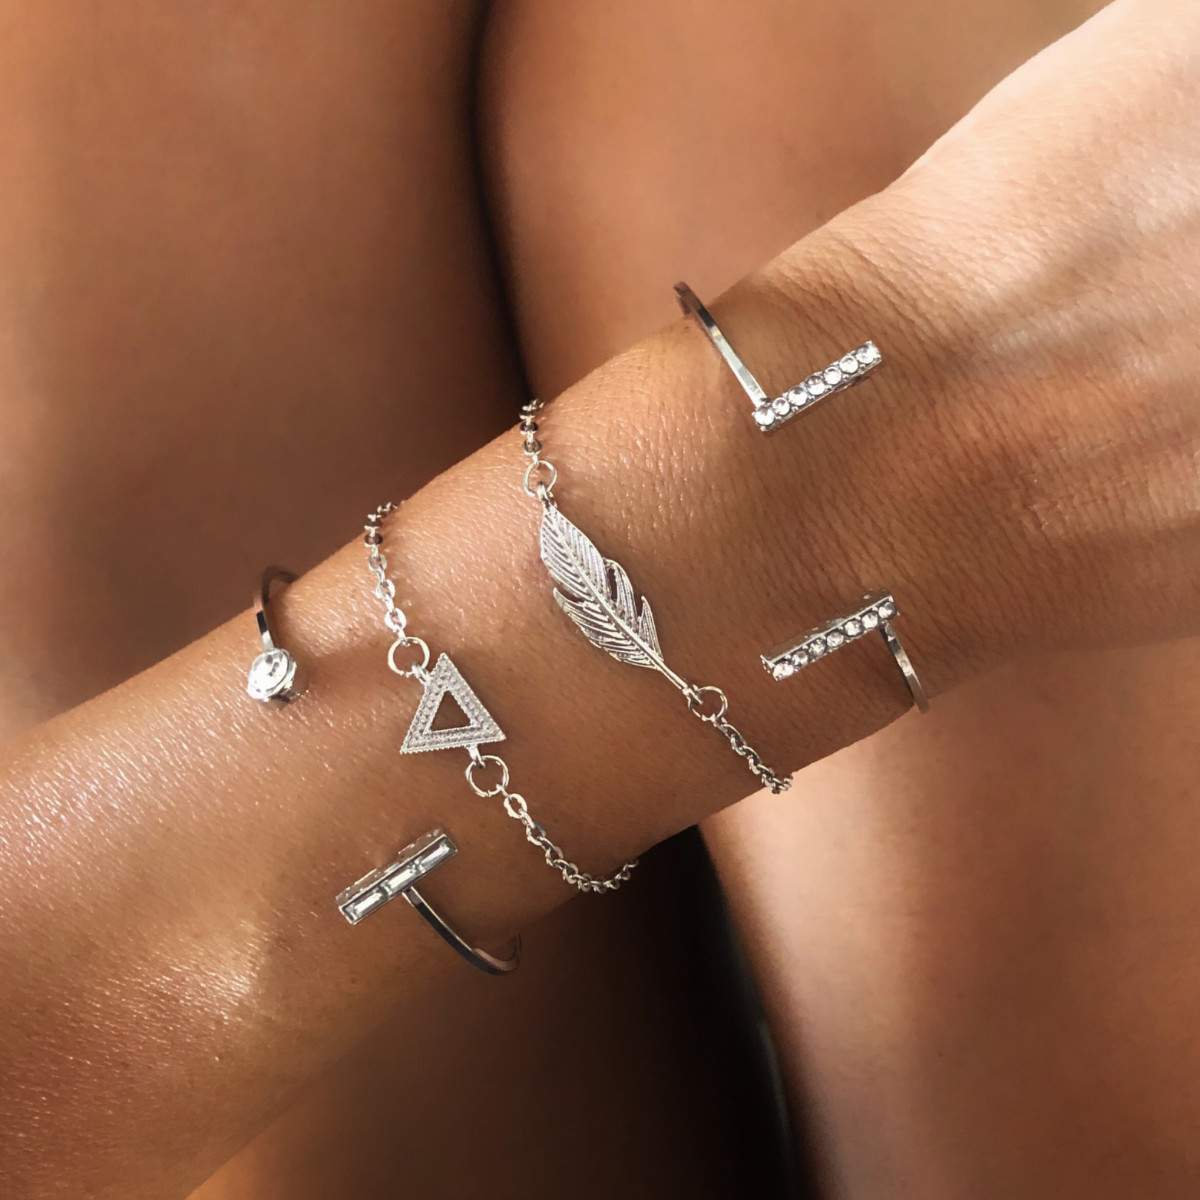 Cadeau bijoux femme- Bracelet feuille - BIJOUX FANTAISIE